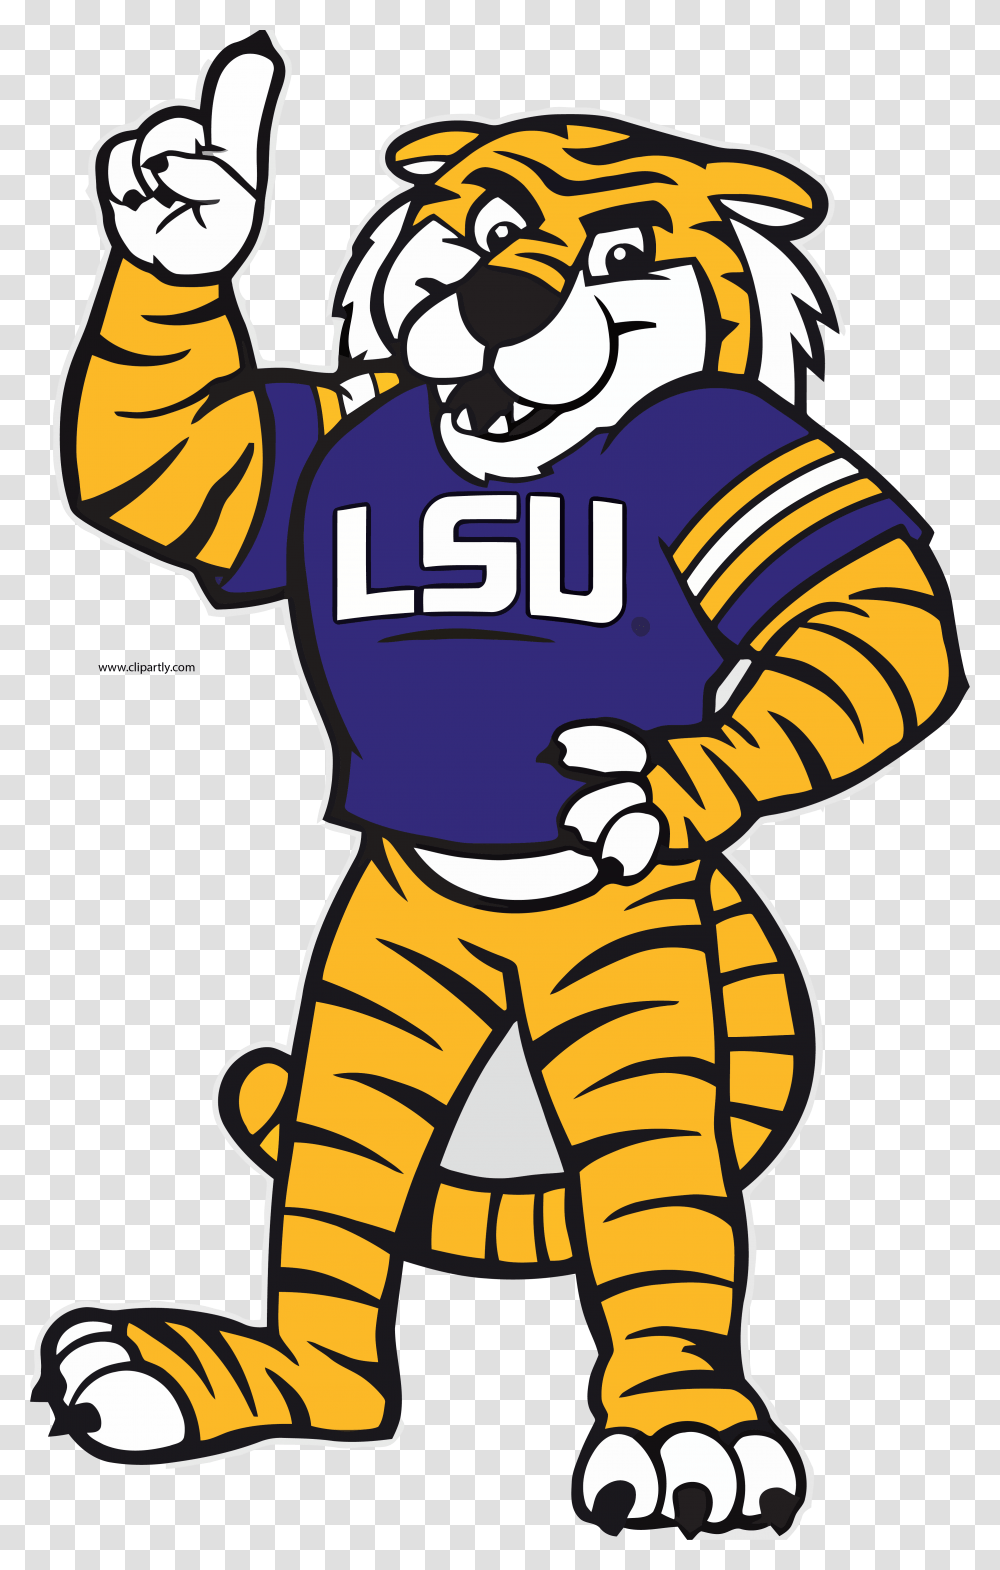 Lsu Tiger Mascot Cartoon Transparent Png